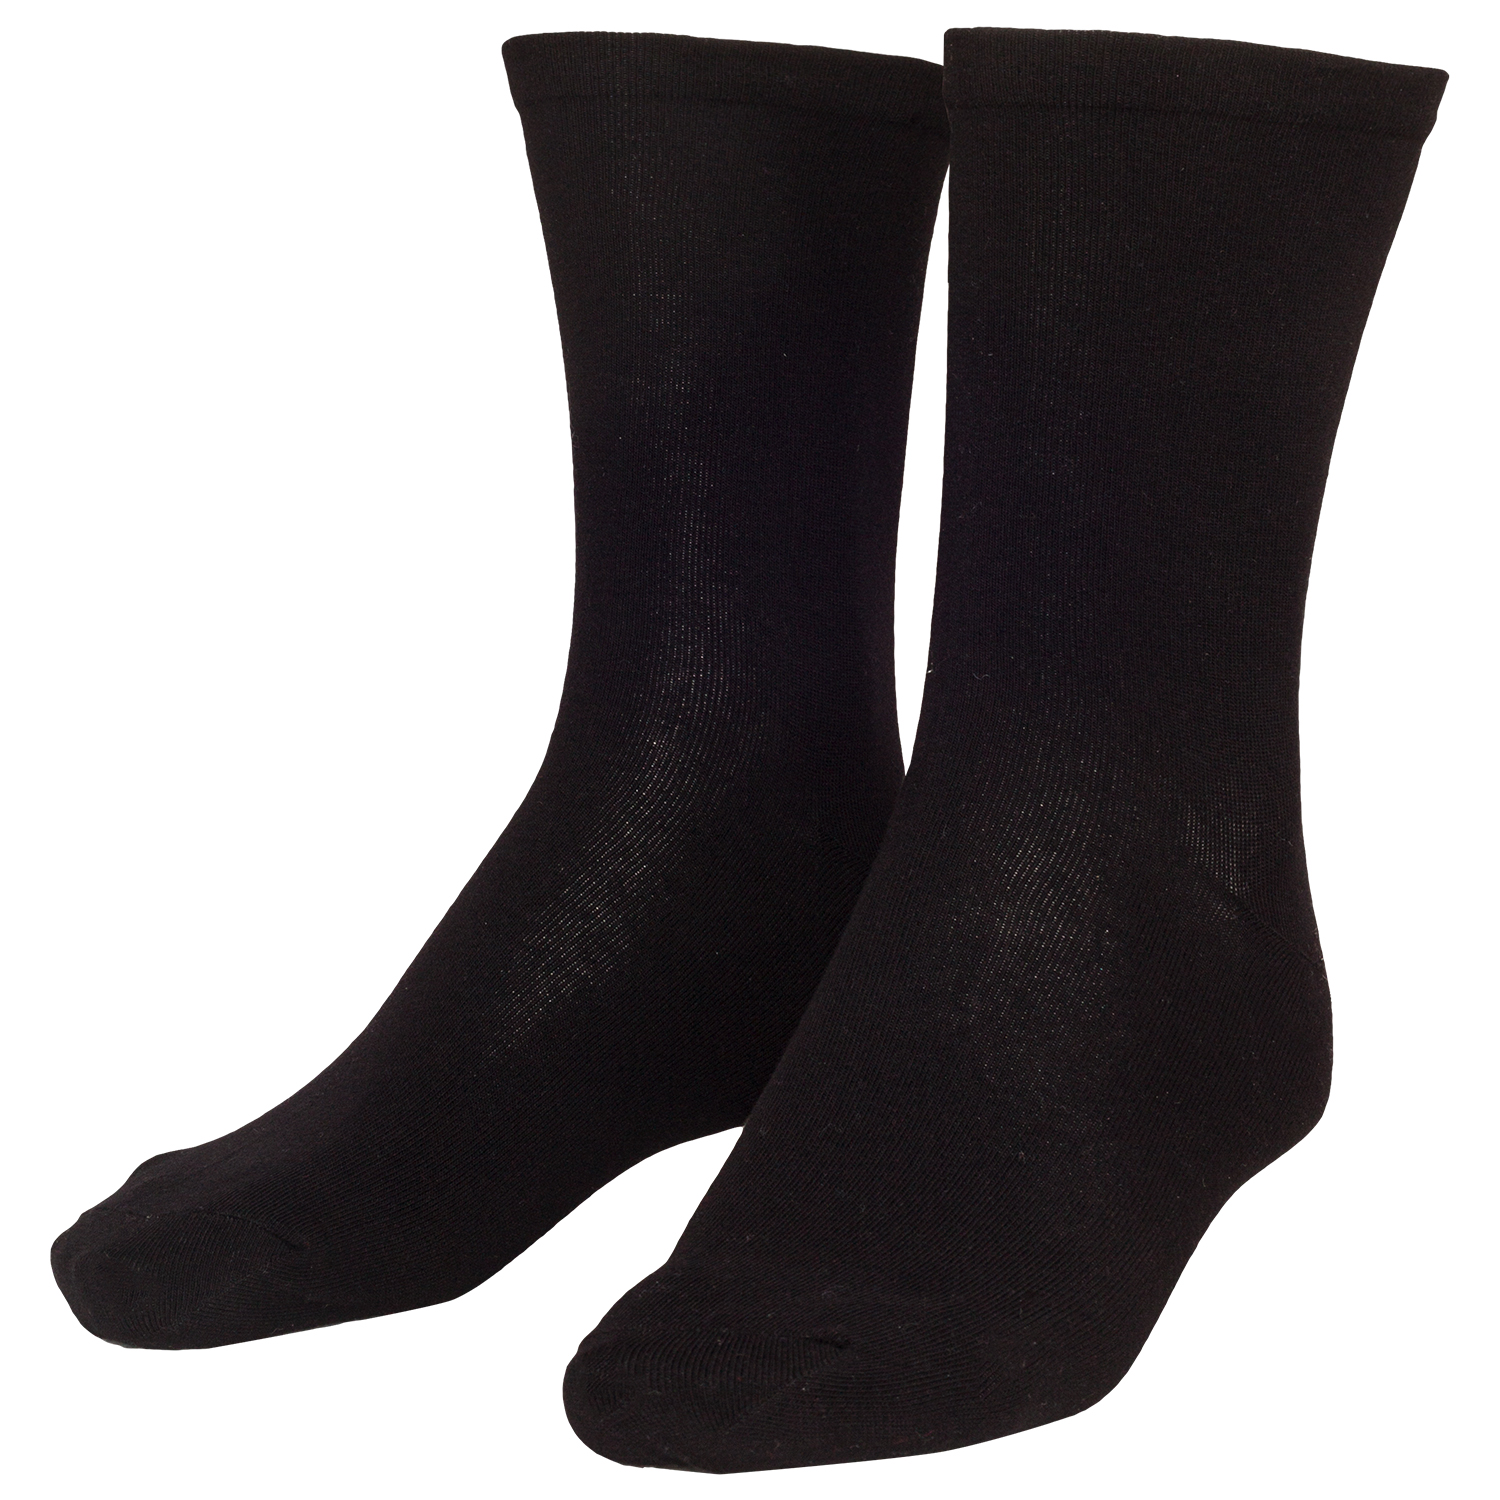 Socke sensitive in schwarz Herren im Doppelpack bis Größe 51/54